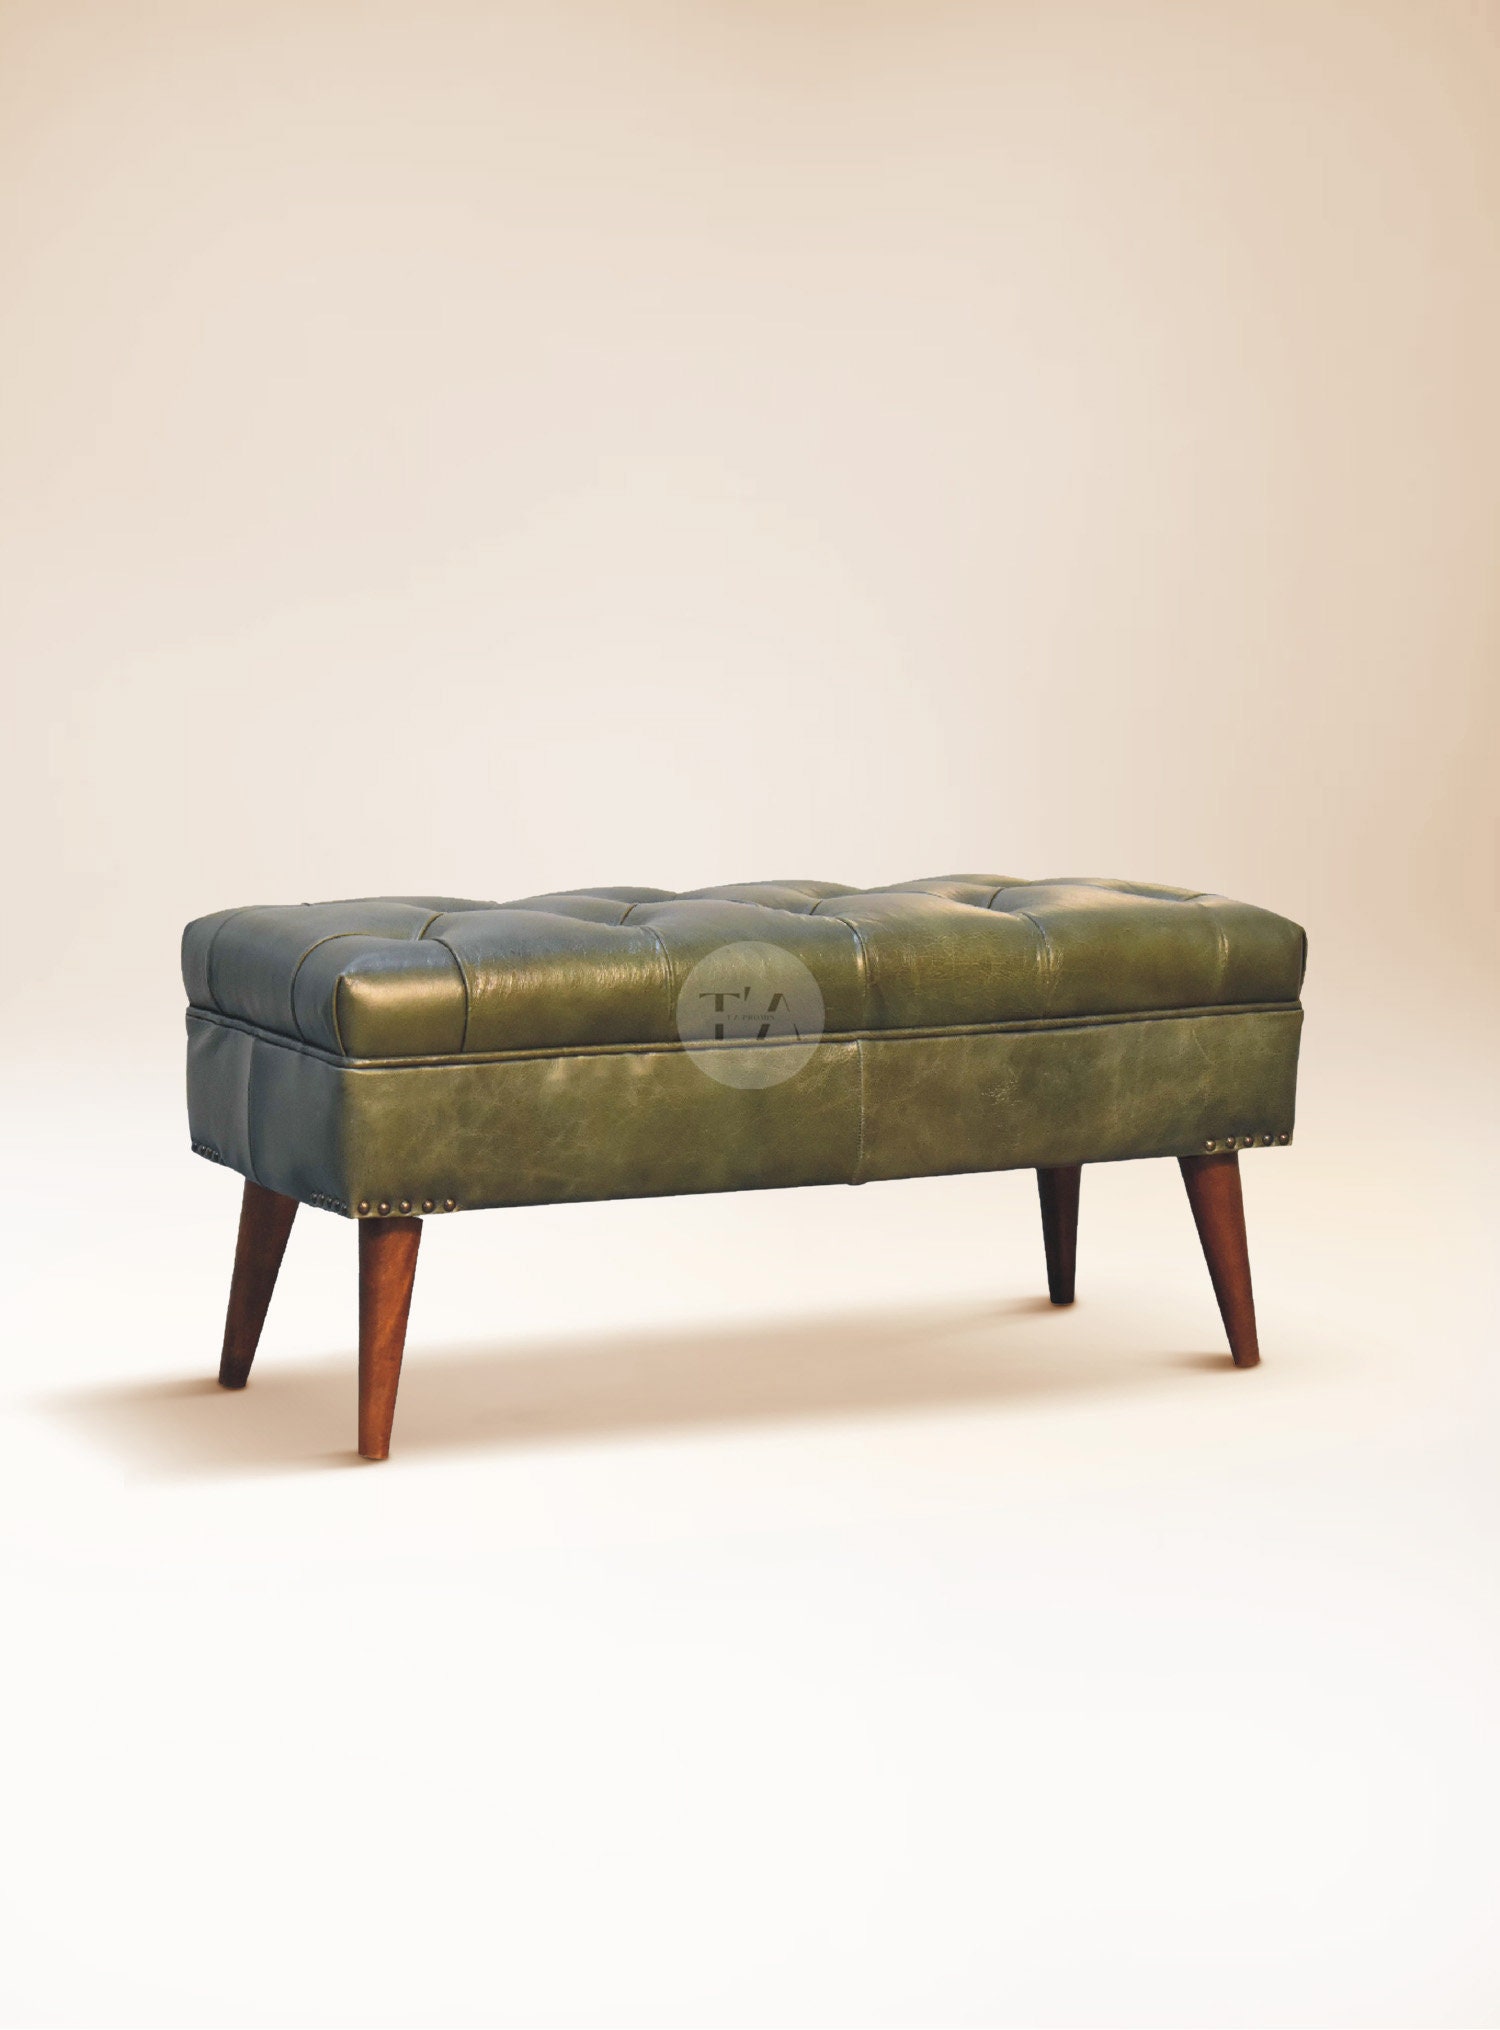 Green Bench Cushion, Cushion for Bench, Custom Bench Cushion